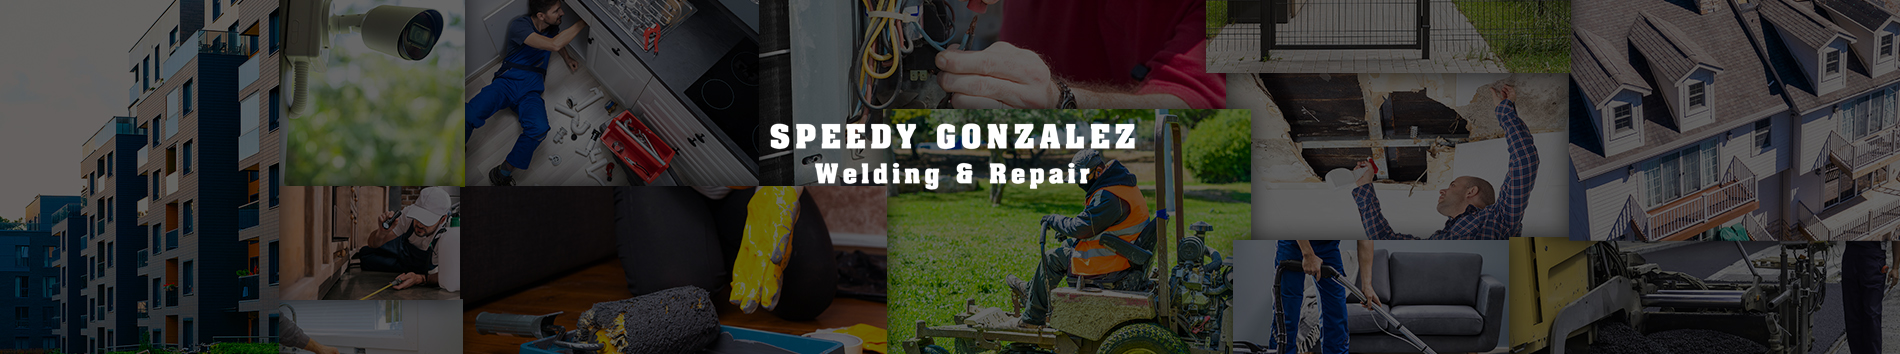 Speedy Gonzalez Welding & Repair